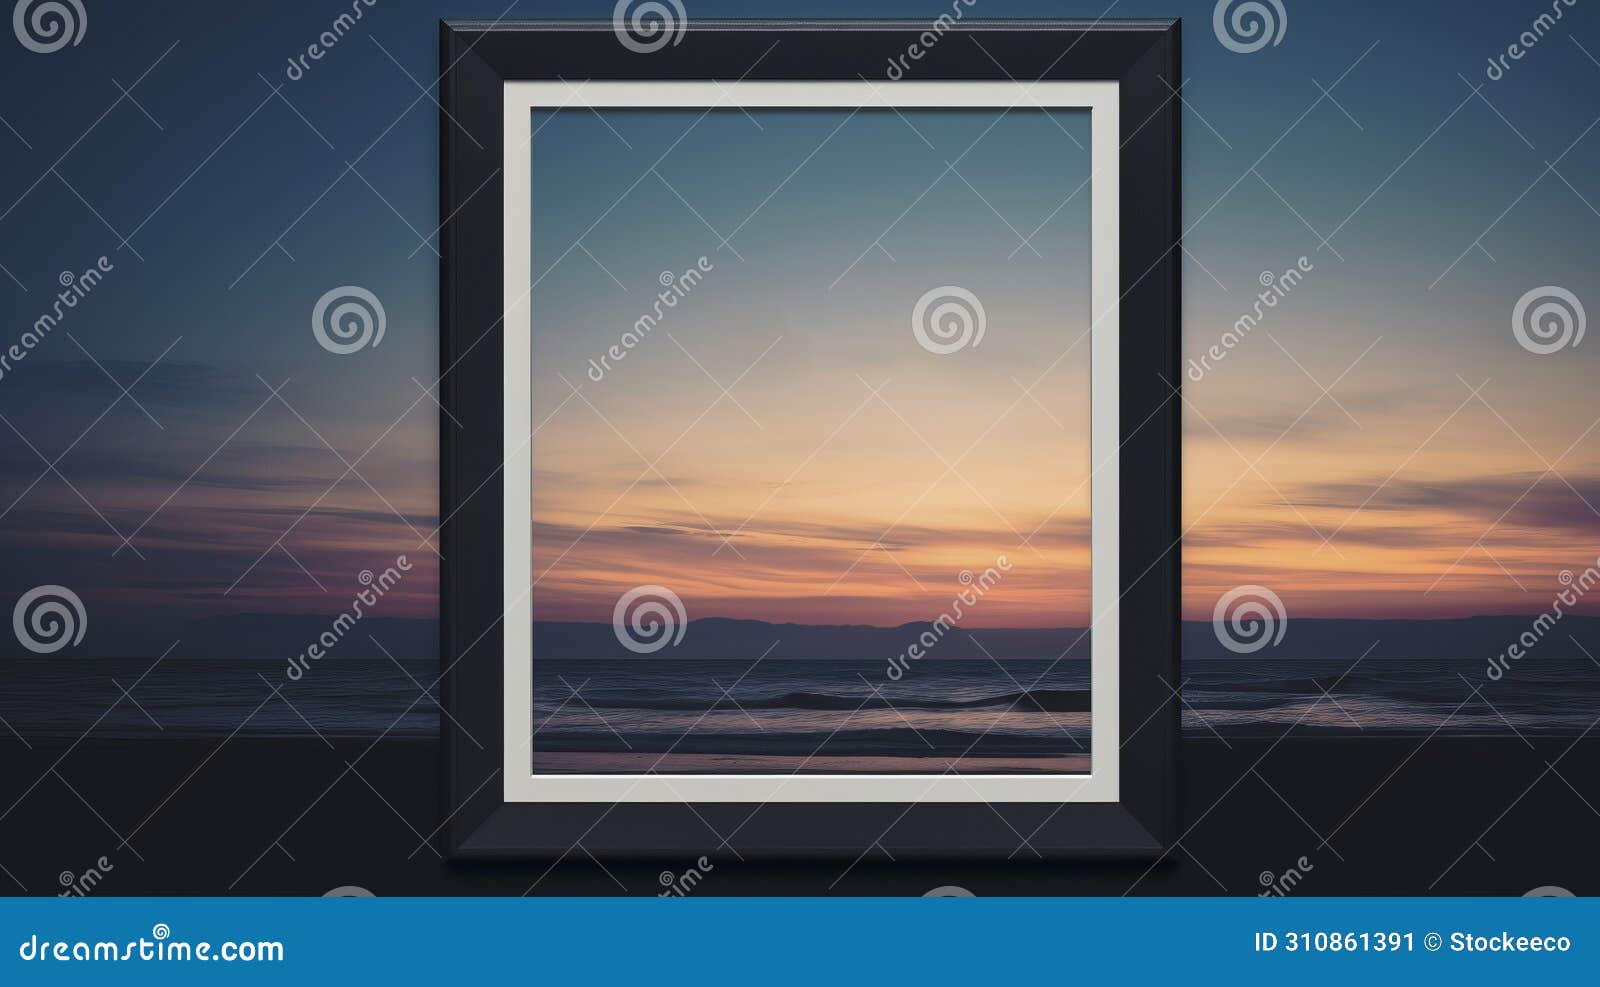 minimalist frame semantics mockup against dusk background in 7x5 size